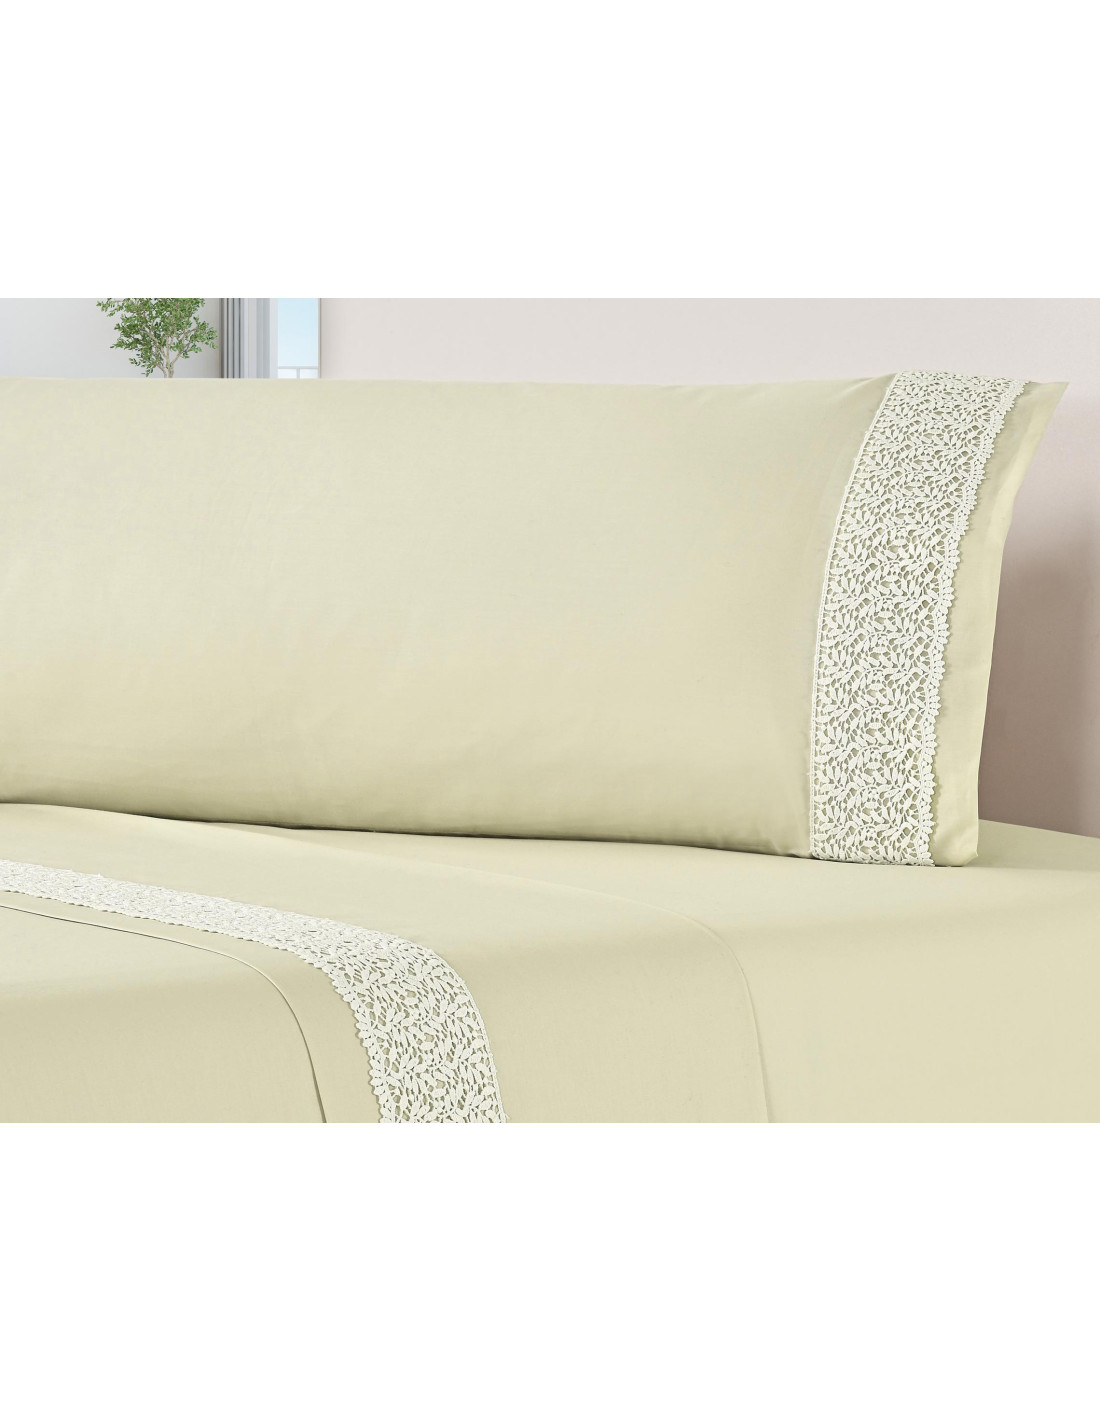  Juego de sábanas de algodón 100% para cama de algodón natural,  4 piezas, extra suave y de lujo, juego de sábanas premium de 800 hilos,  fácil de ajustar hasta 14.0 in